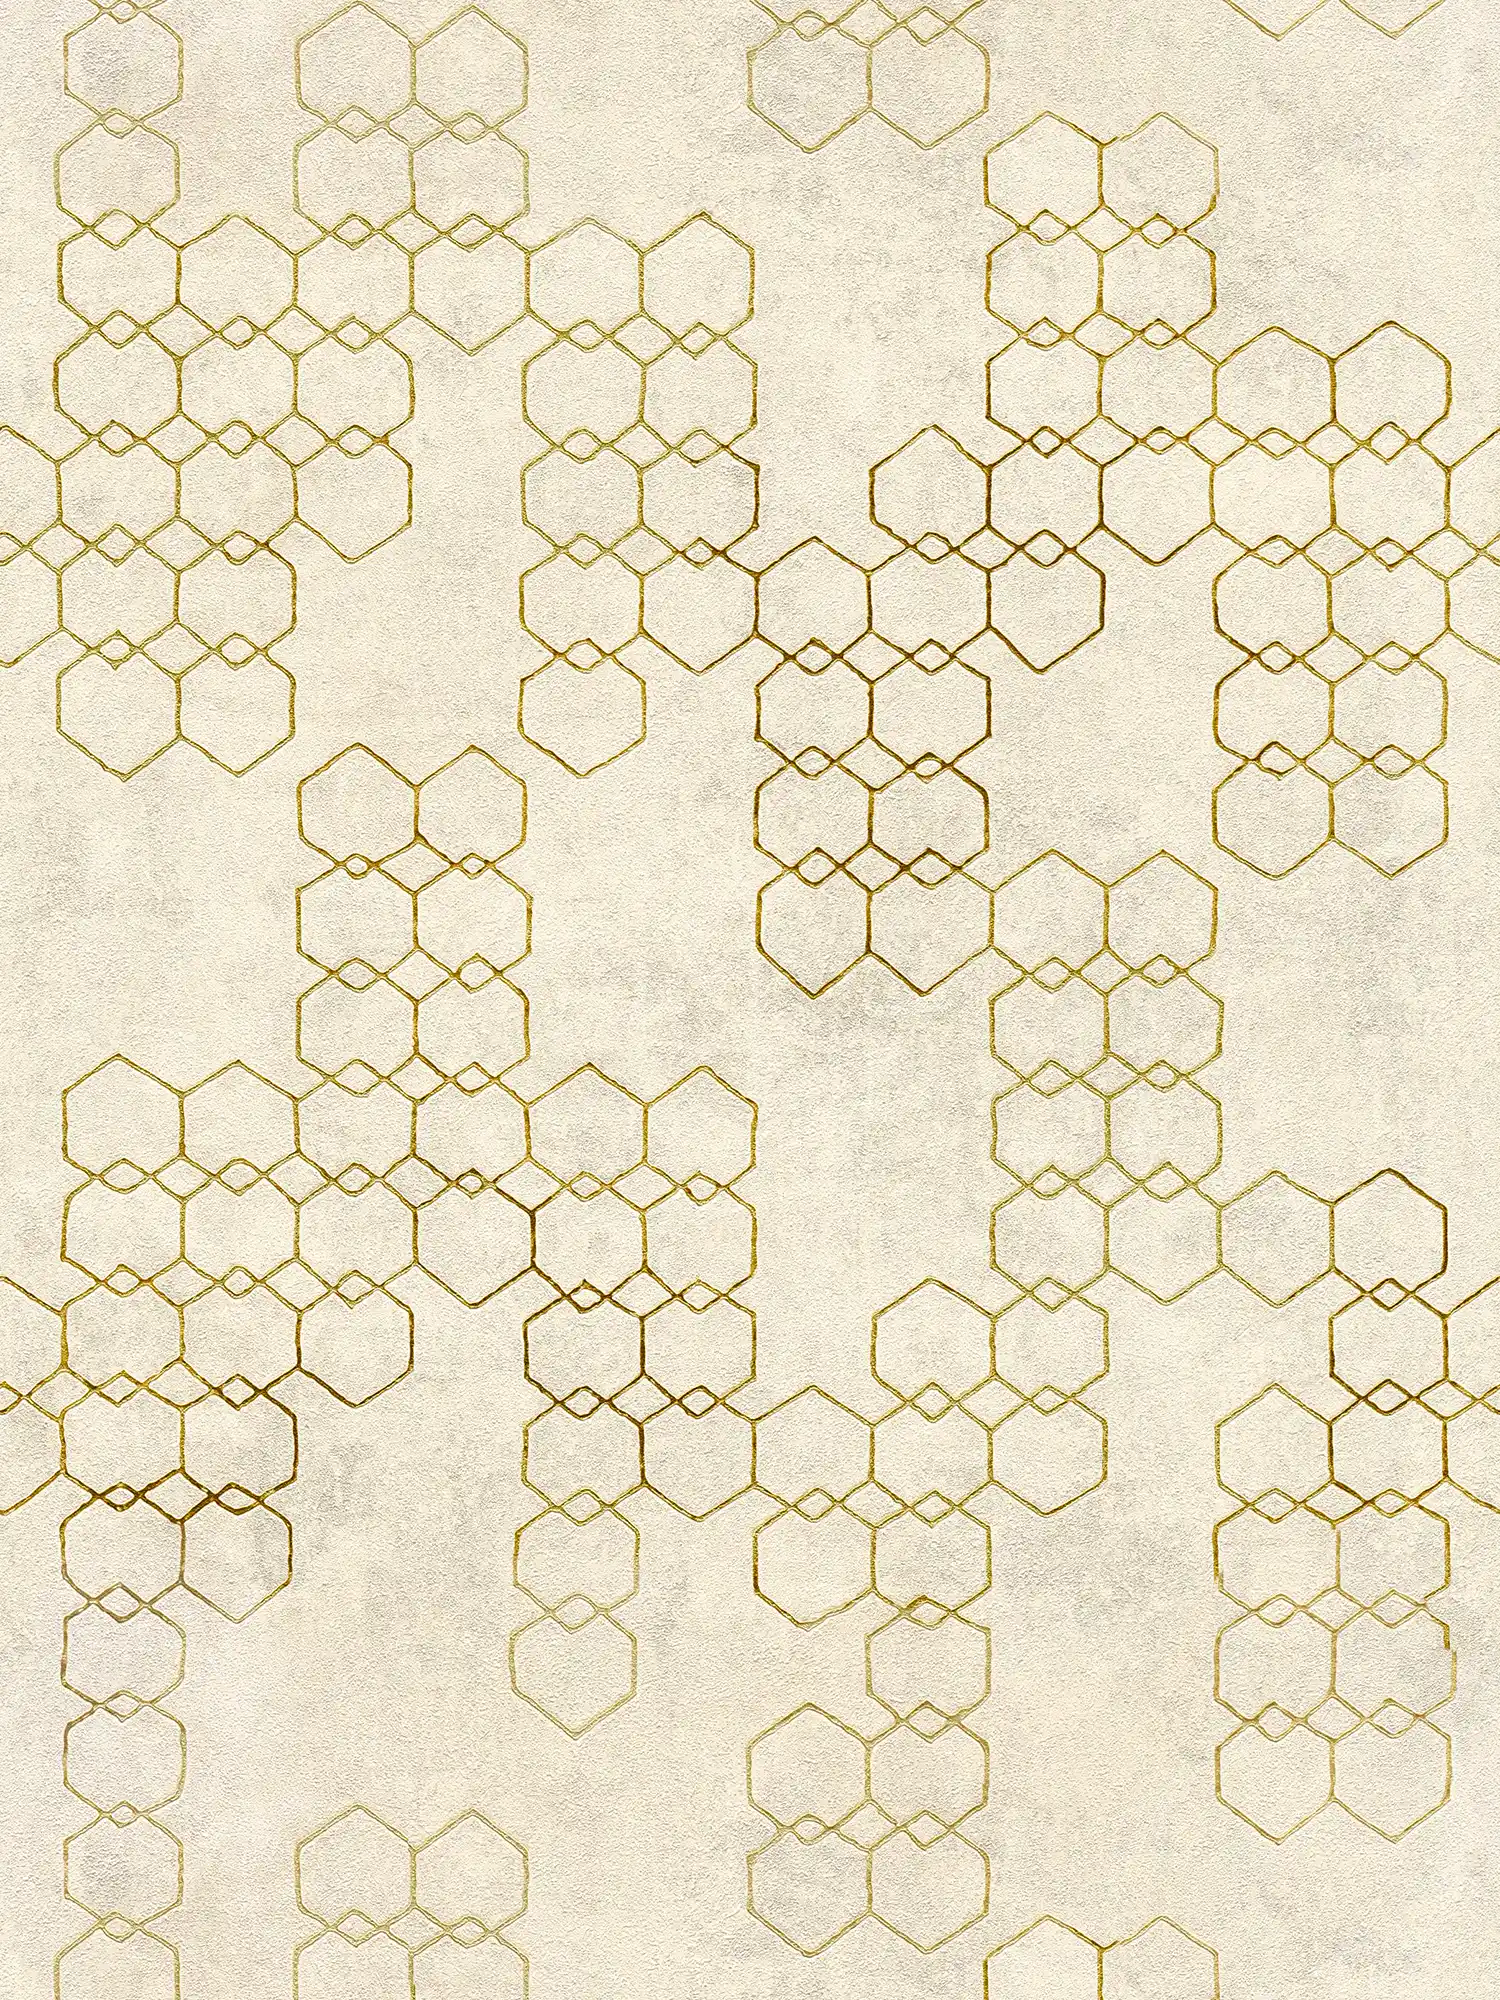 Geometrisch patroonbehang in industriële stijl - crème, goud, grijs
